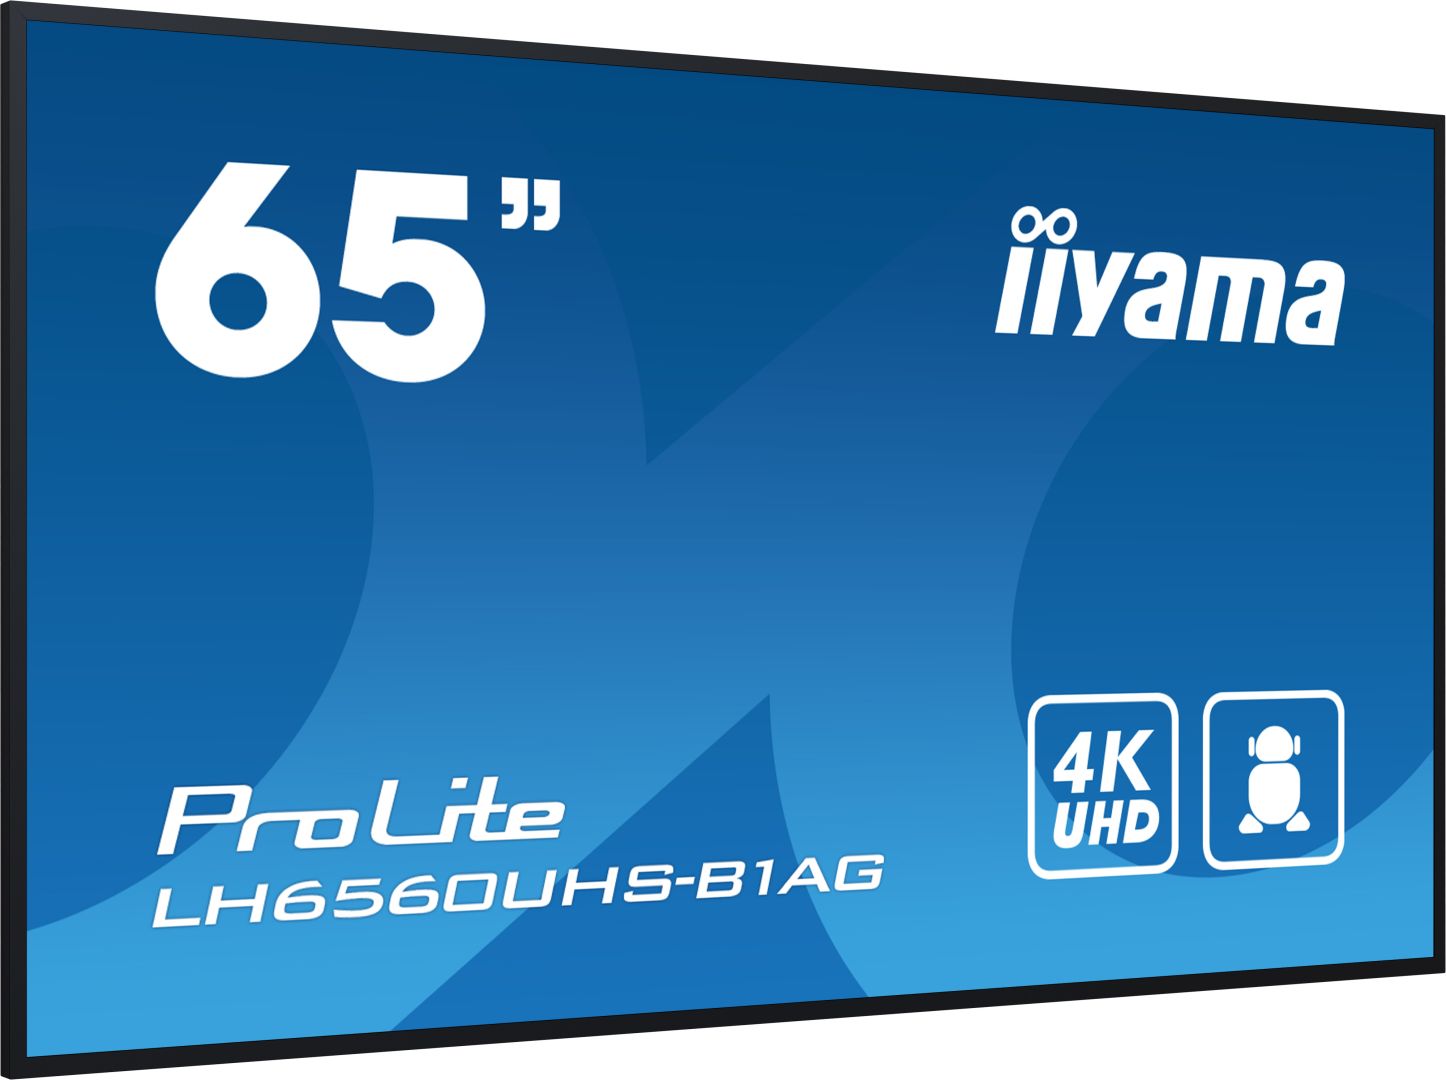 iiyama 65" ProLite LH6560UHS-B1AG LED Display-4